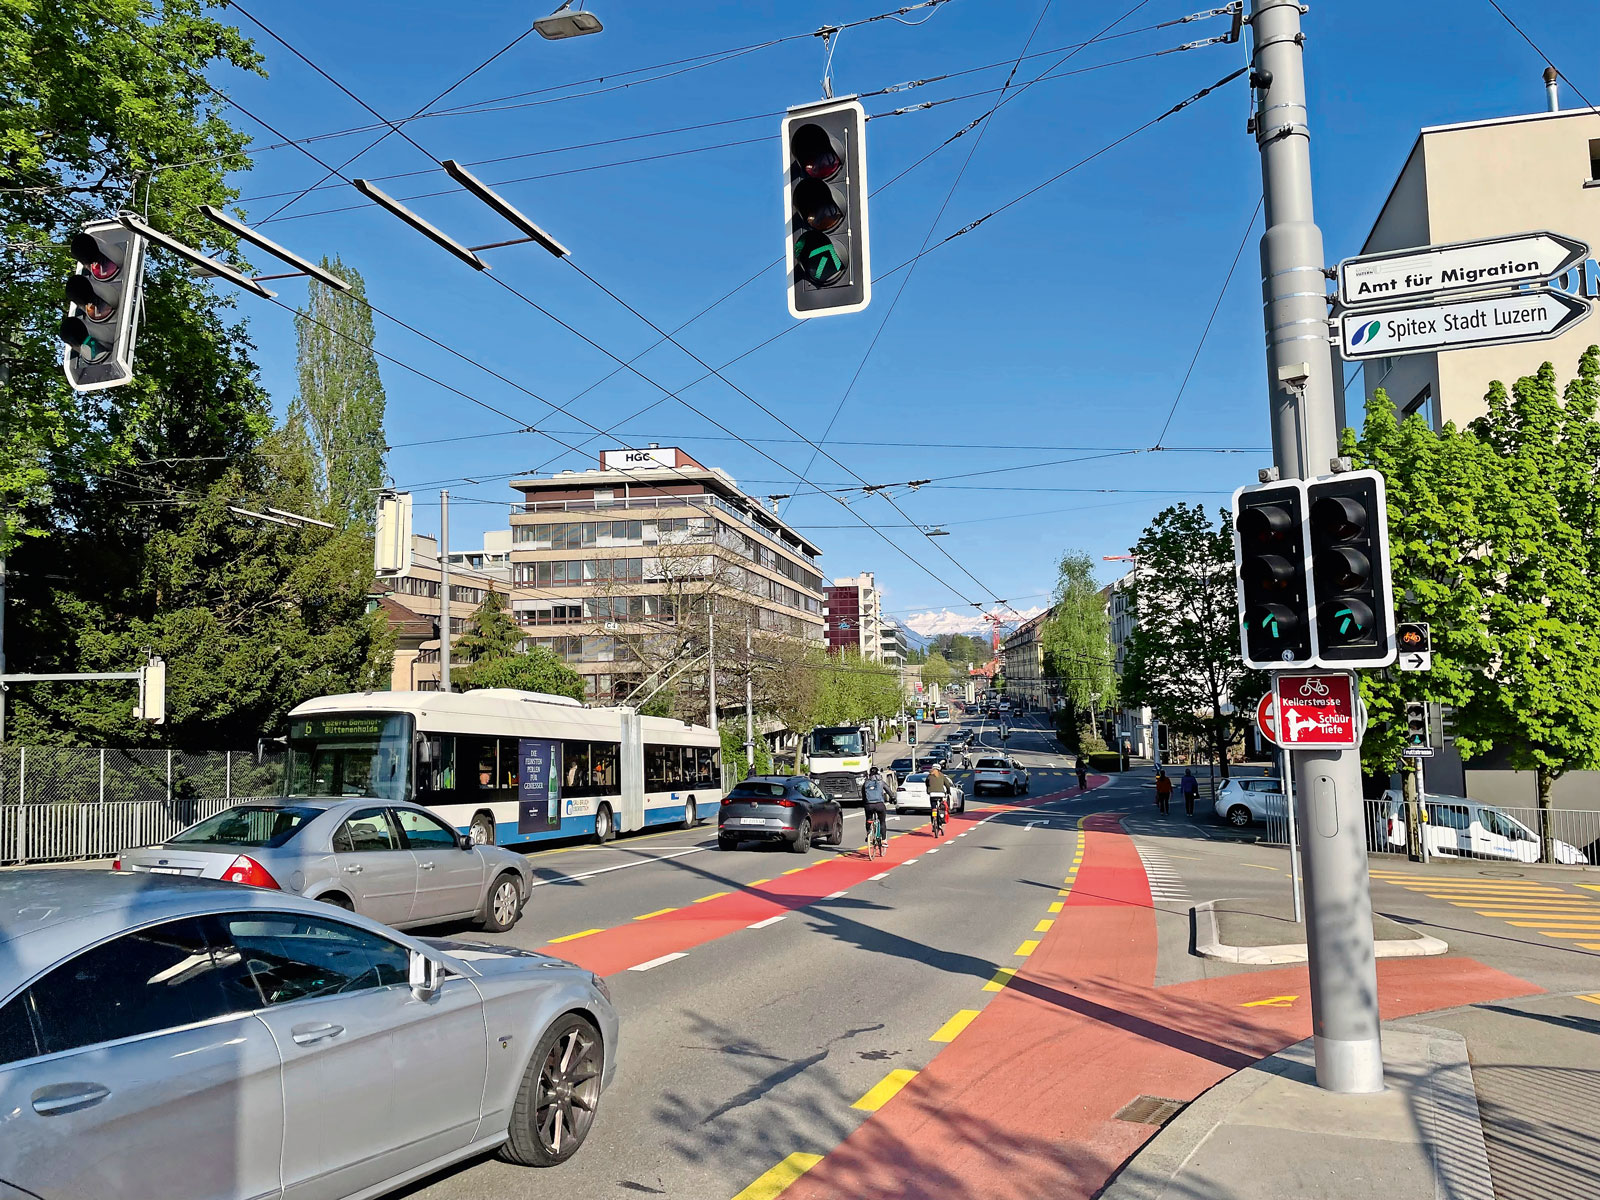 Strassenkreuzung mit Autos, Bus, Velos und Ampeln